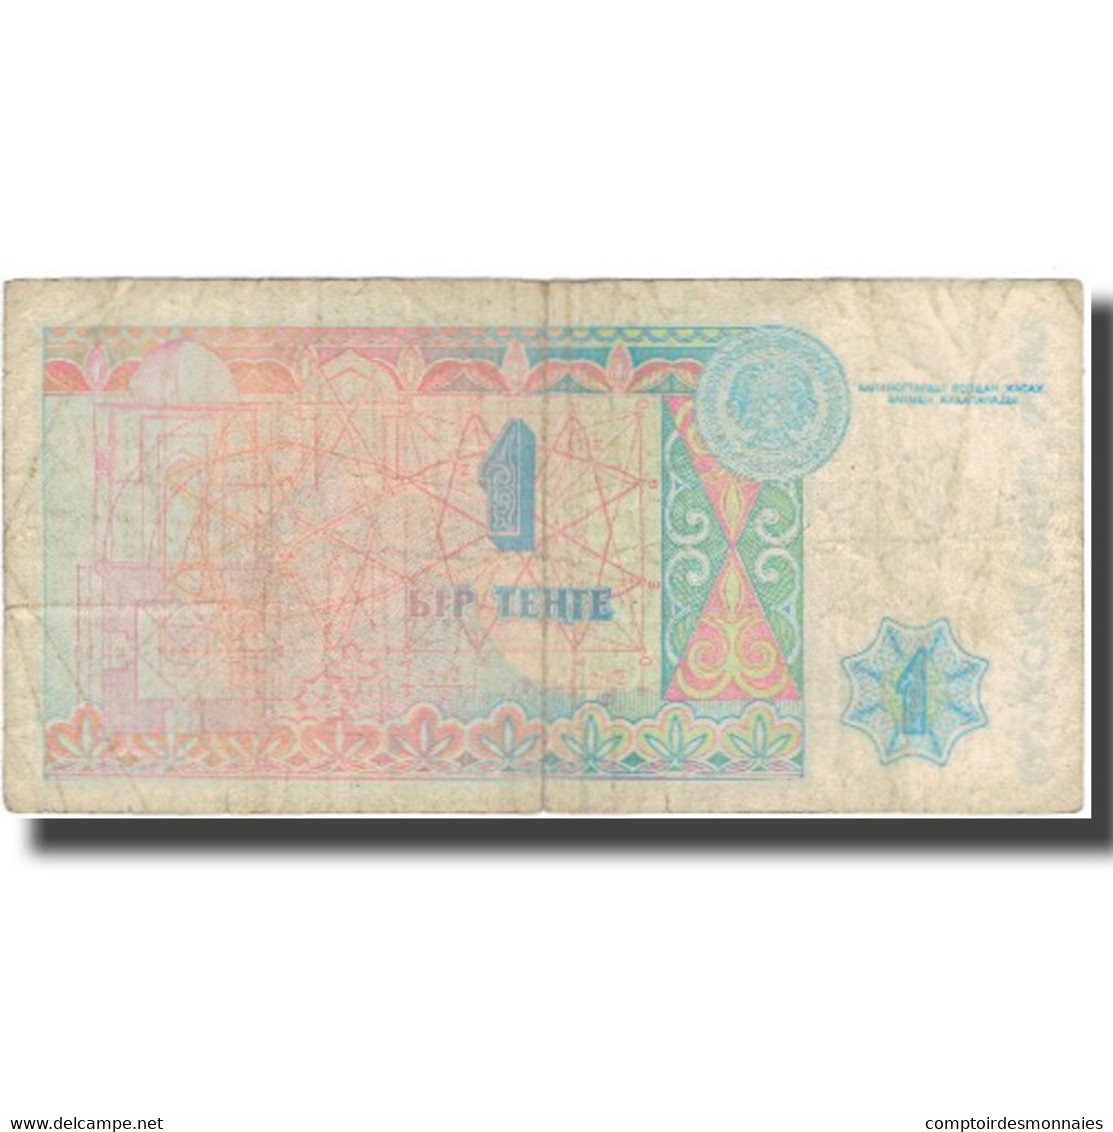 Billet, Kazakhstan, 1 Tenge, 1993, 1993, KM:7a, B+ - Kasachstan